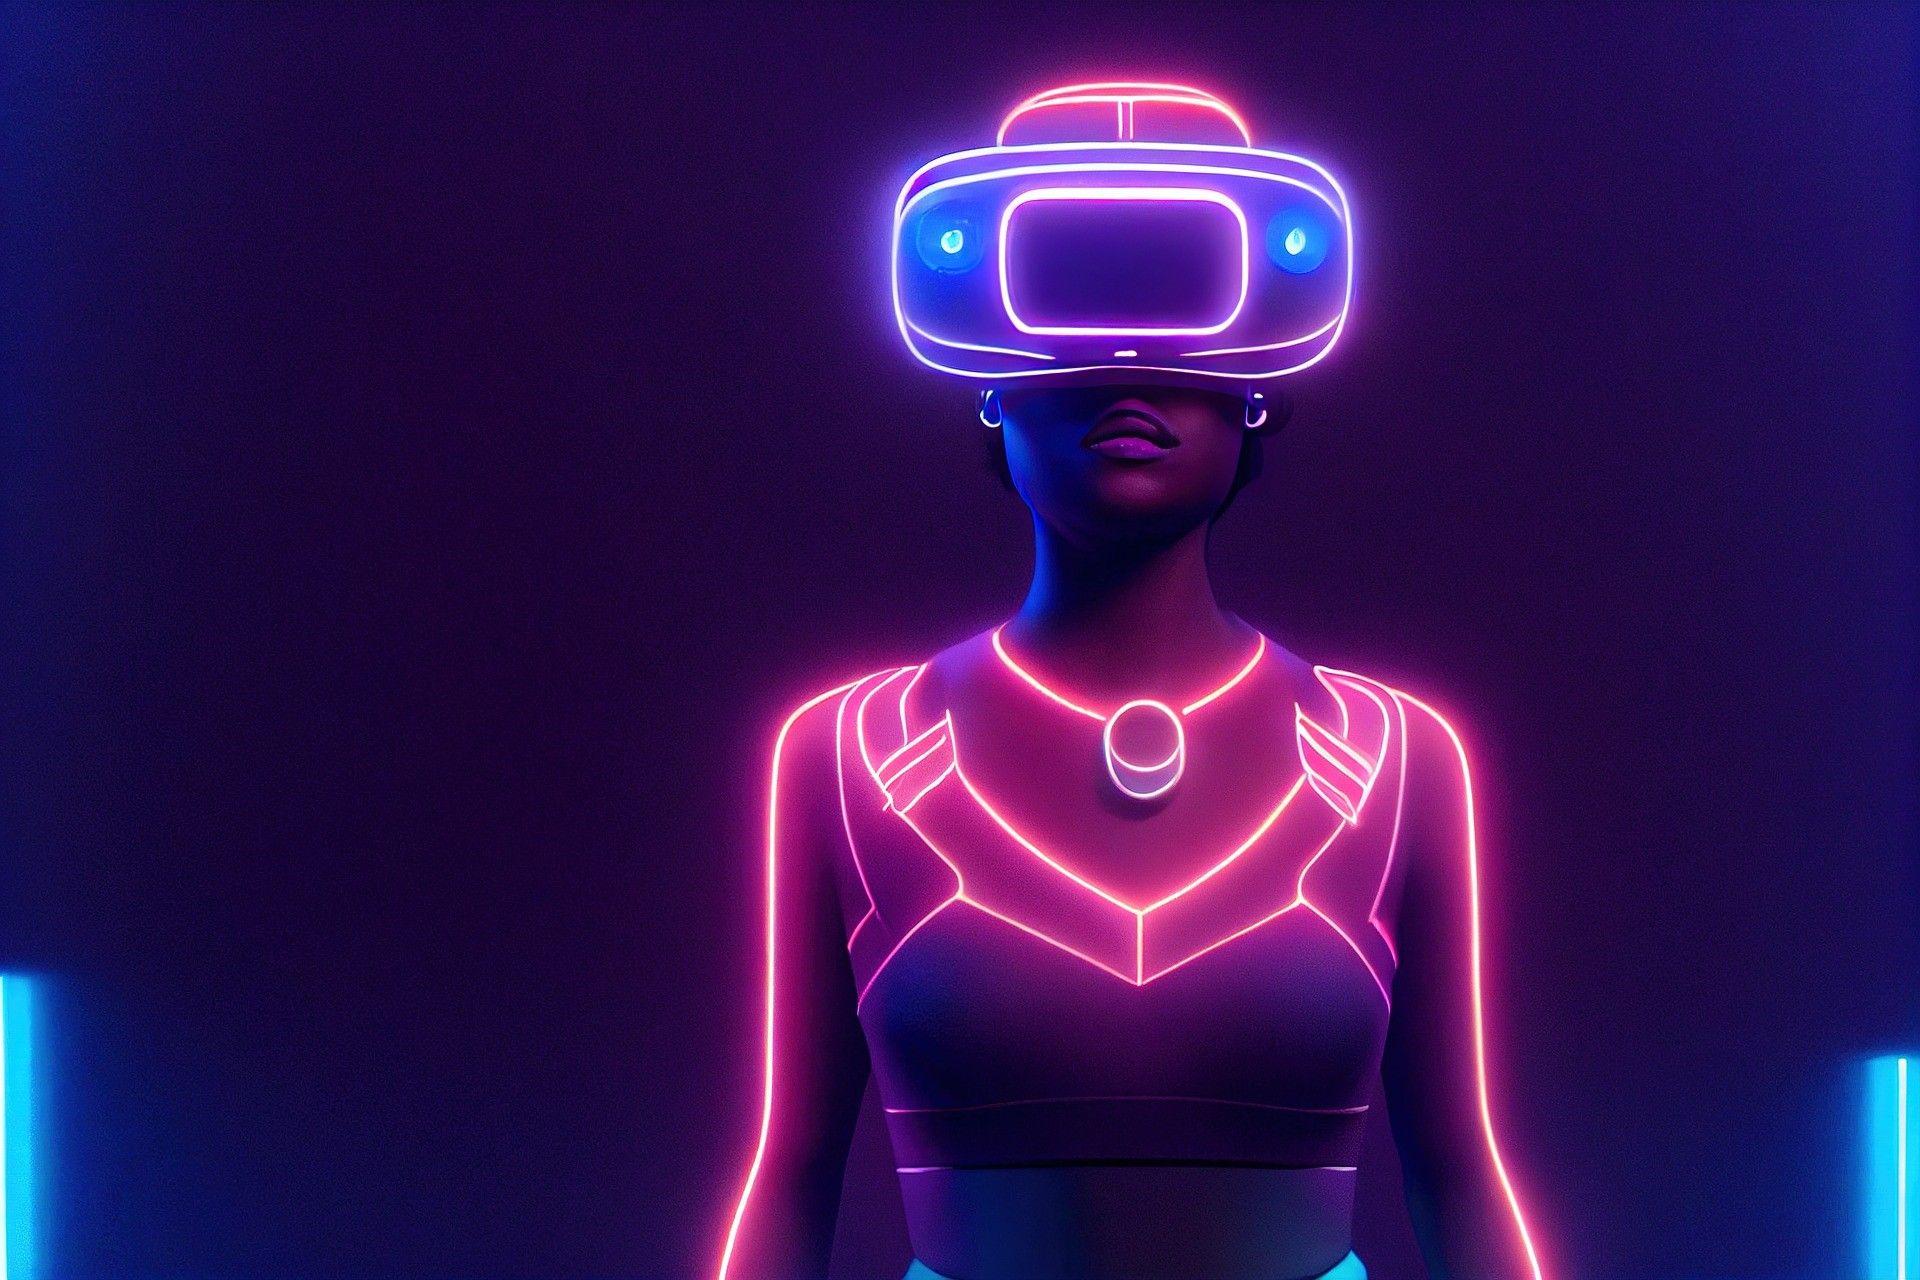 Испытайте VR вблизи: Исчерпывающее руководство по виртуальной реальности и гоночным симуляторам